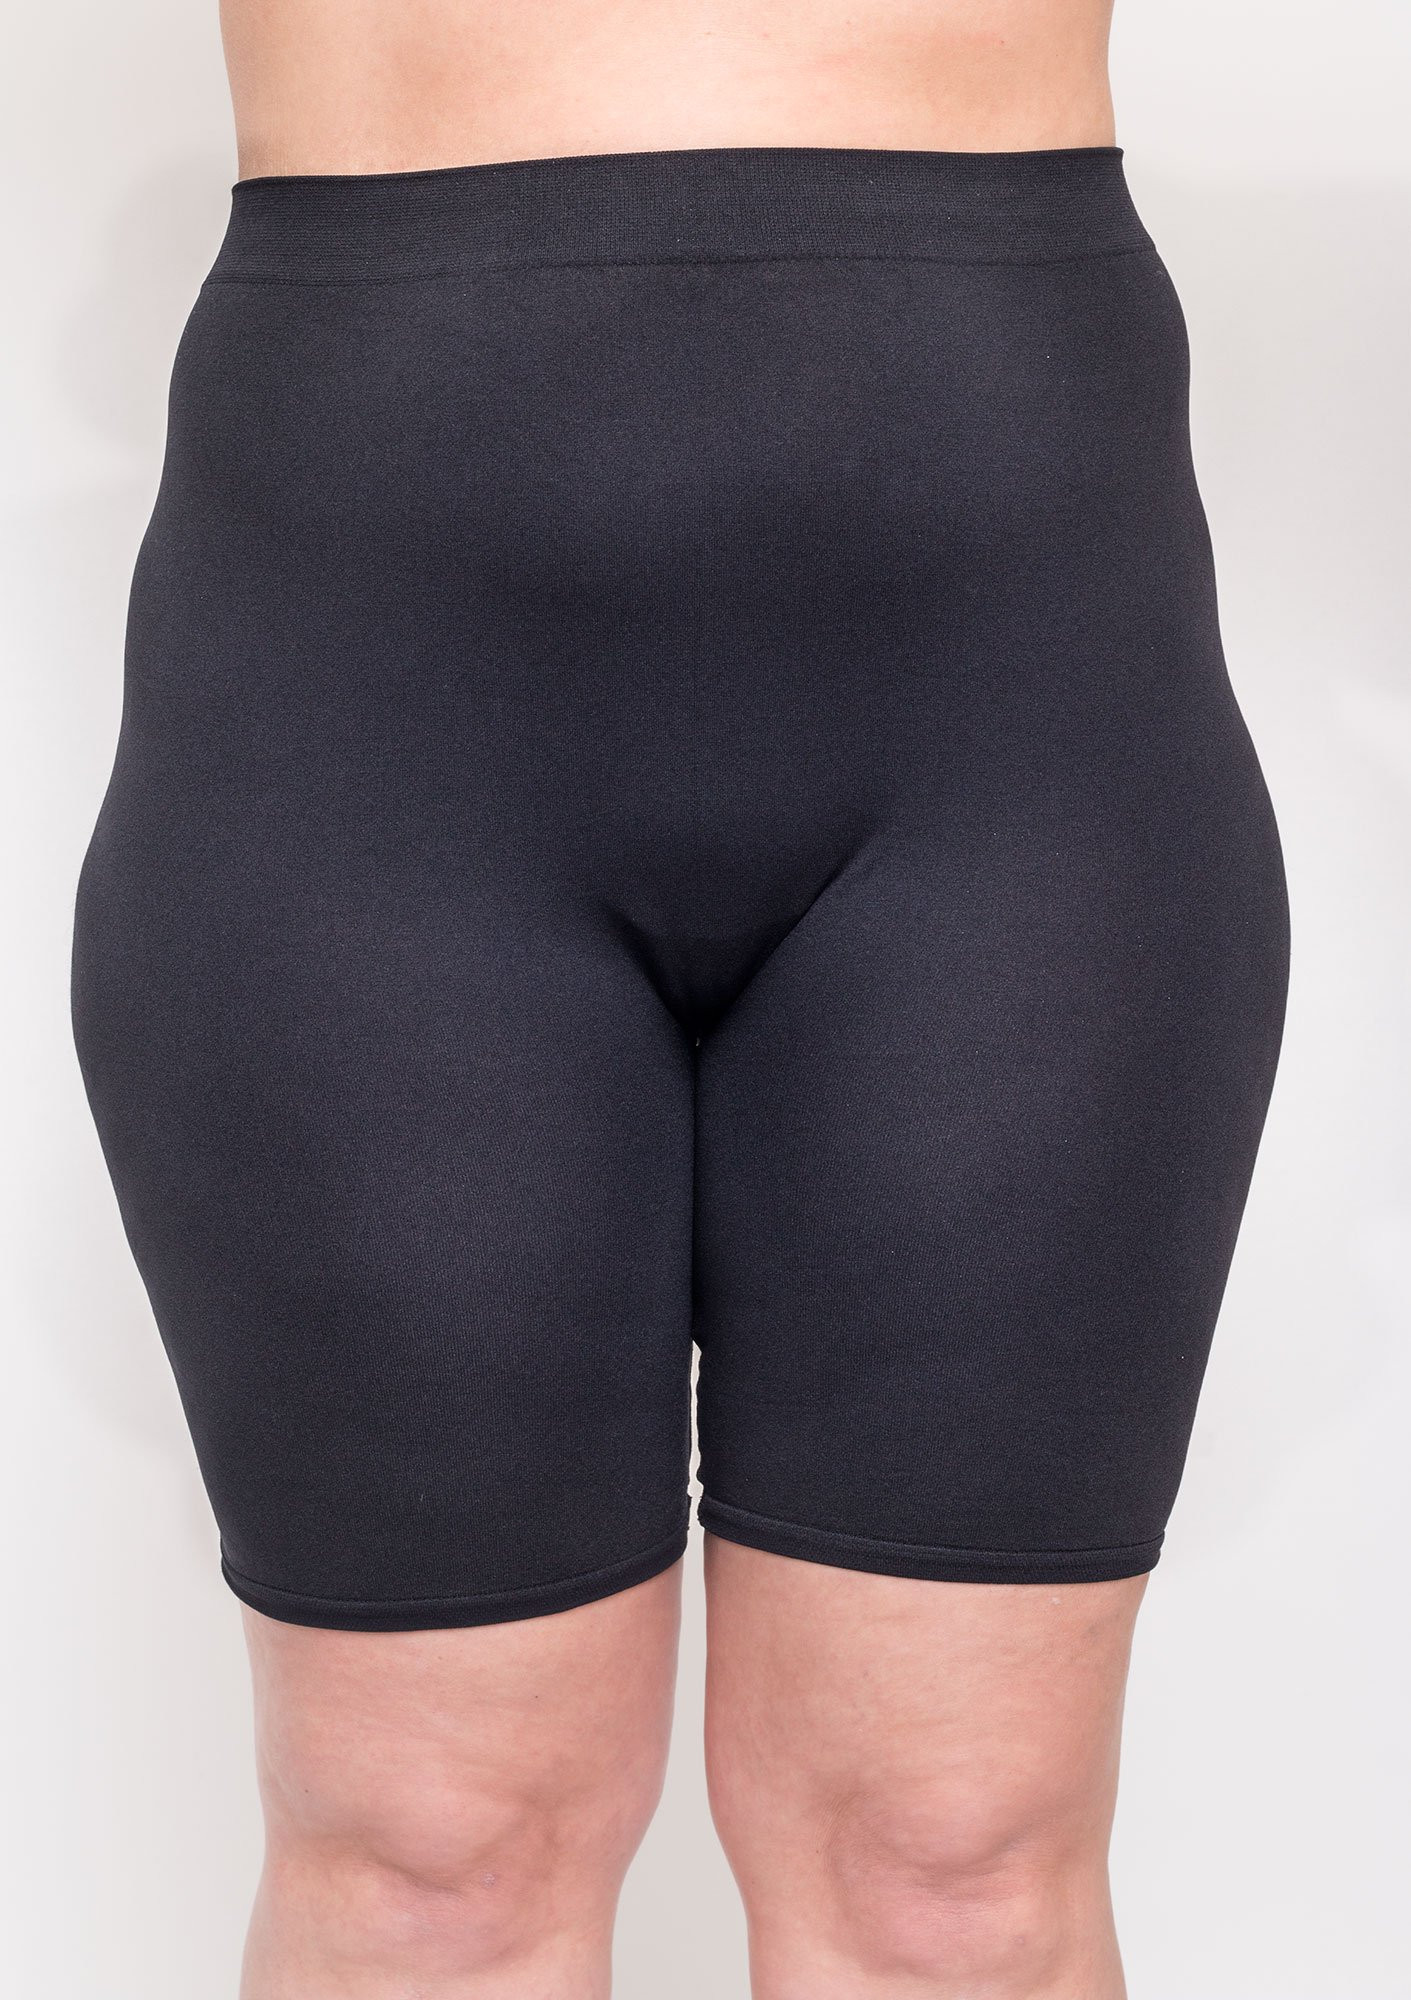 OTTILIA - Svarta shorts med hög midja i mjuk, sömlös, stark kvalitet